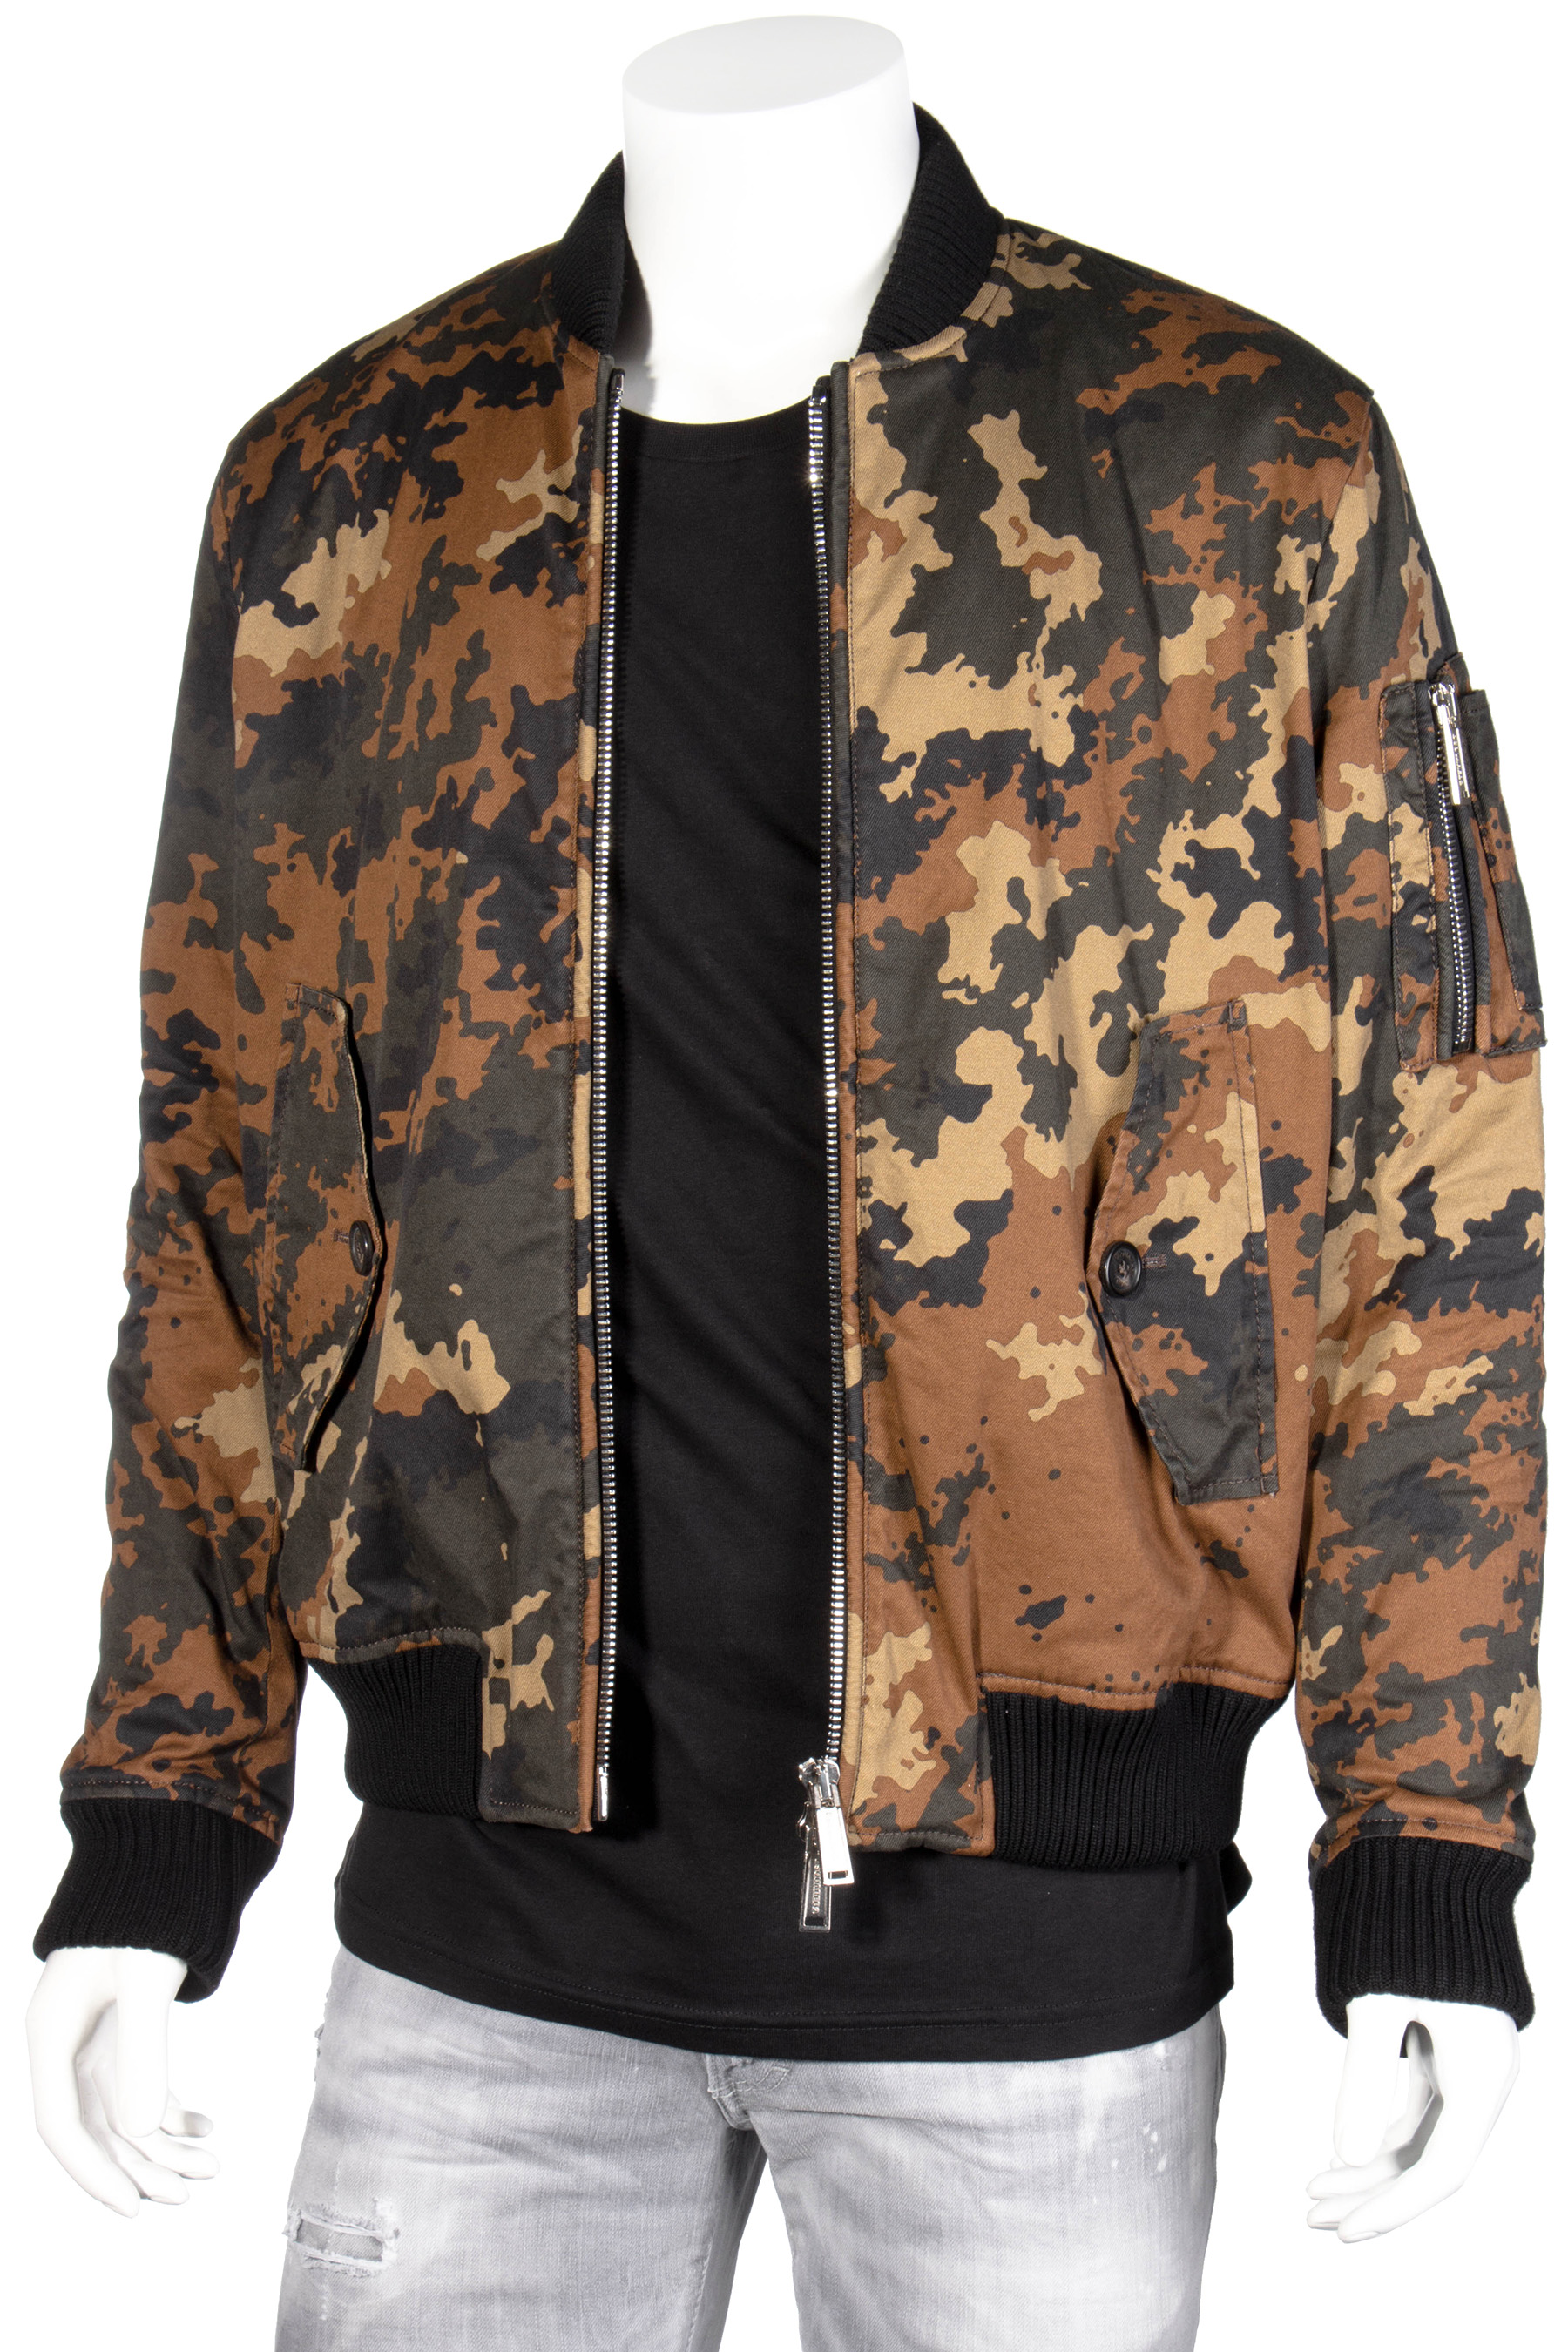 DSQUARED2 Camouflage Bomber, Jackets, Jackets & Coats, Clothing, Men